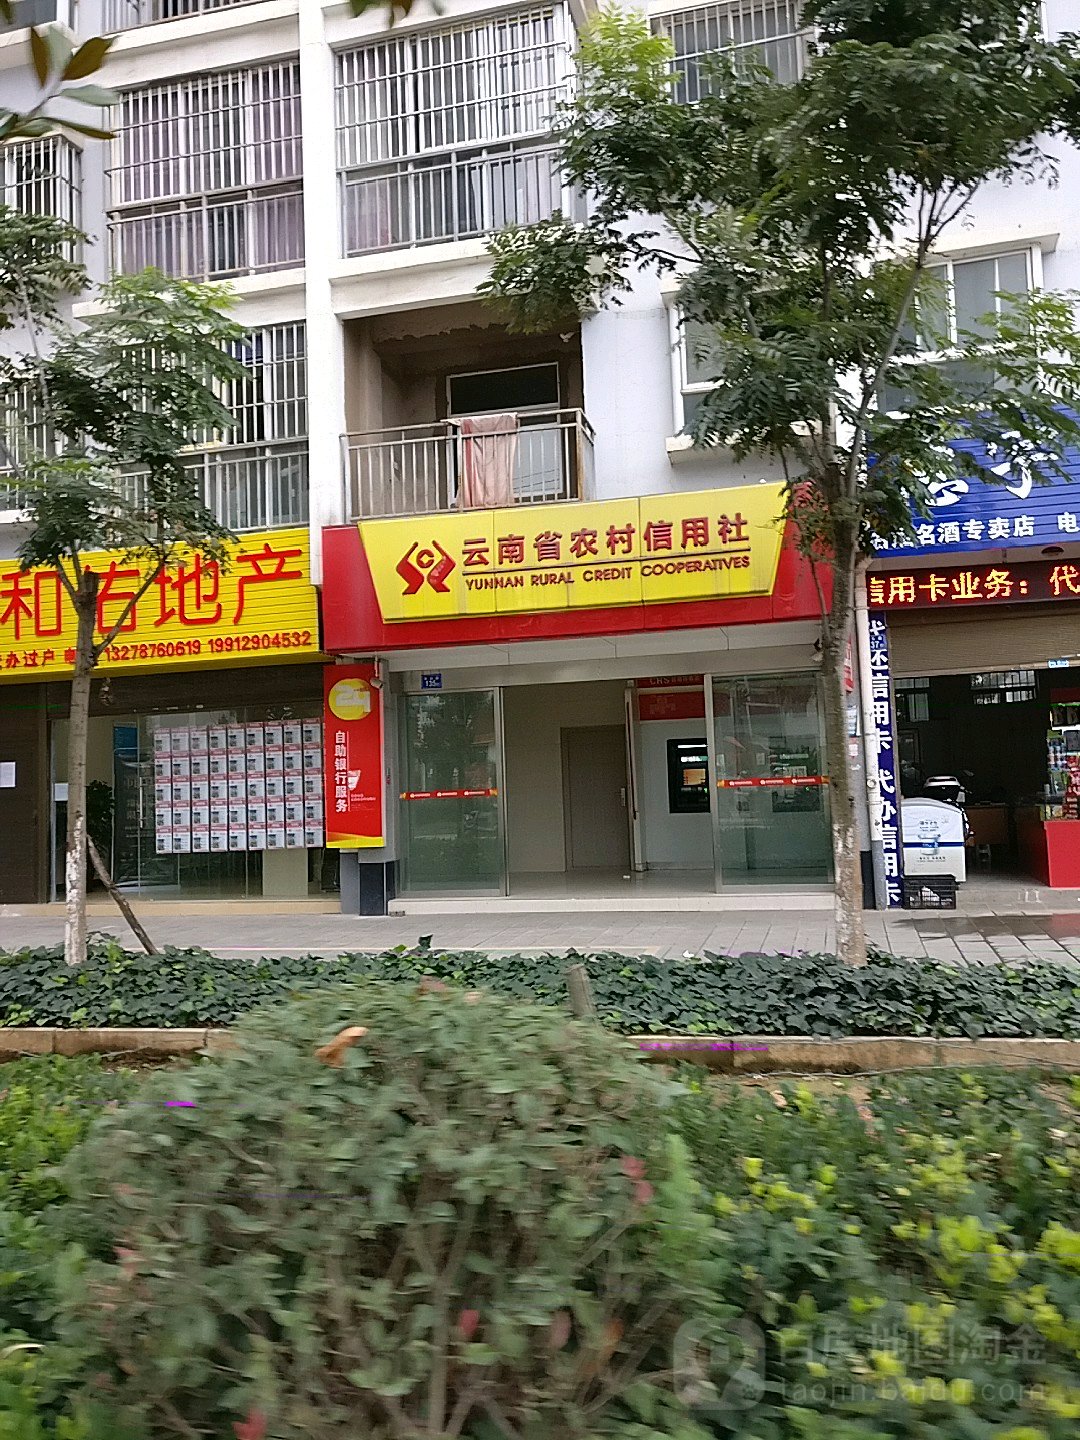 南省农村信用社24小时自助银行服务(御景花香)